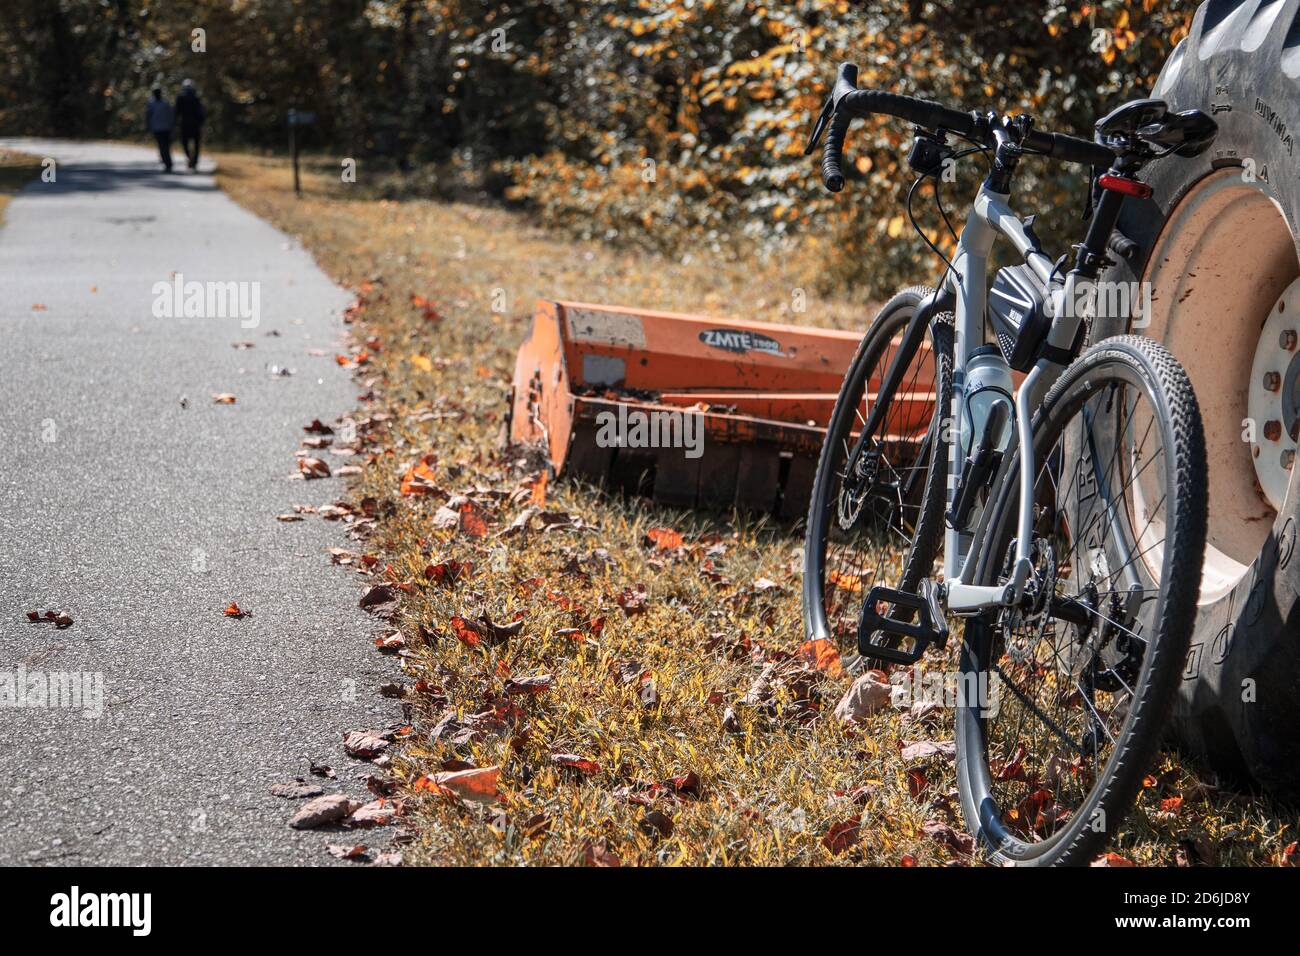 Une moto de gravier penchée contre un tracteur le long d'une voie verte chemin à l'automne Banque D'Images